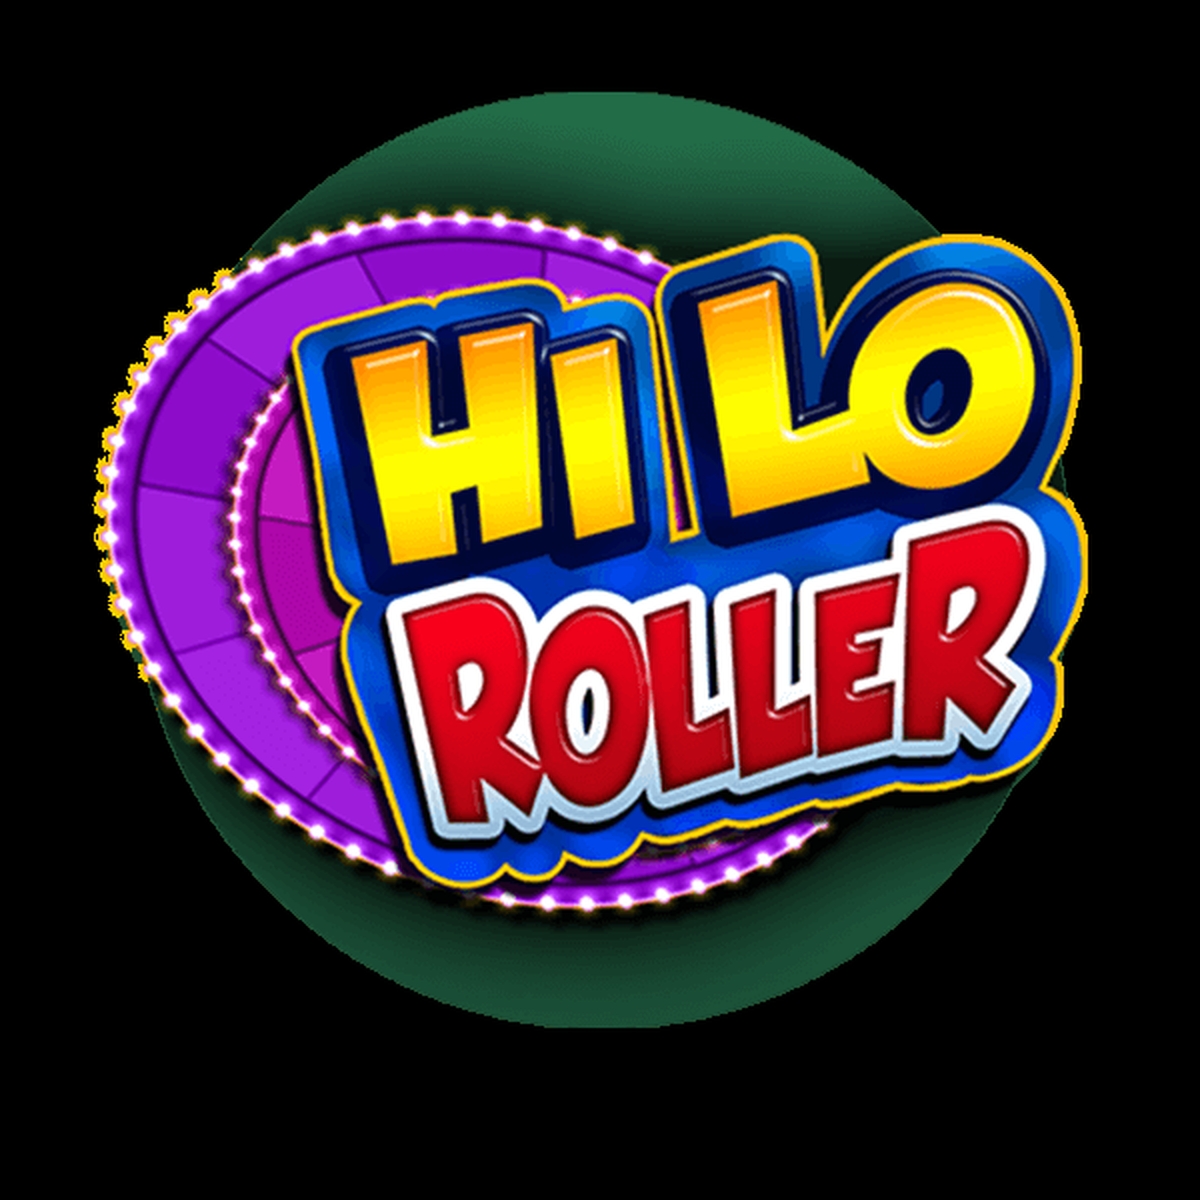 Hi Lo Roller demo